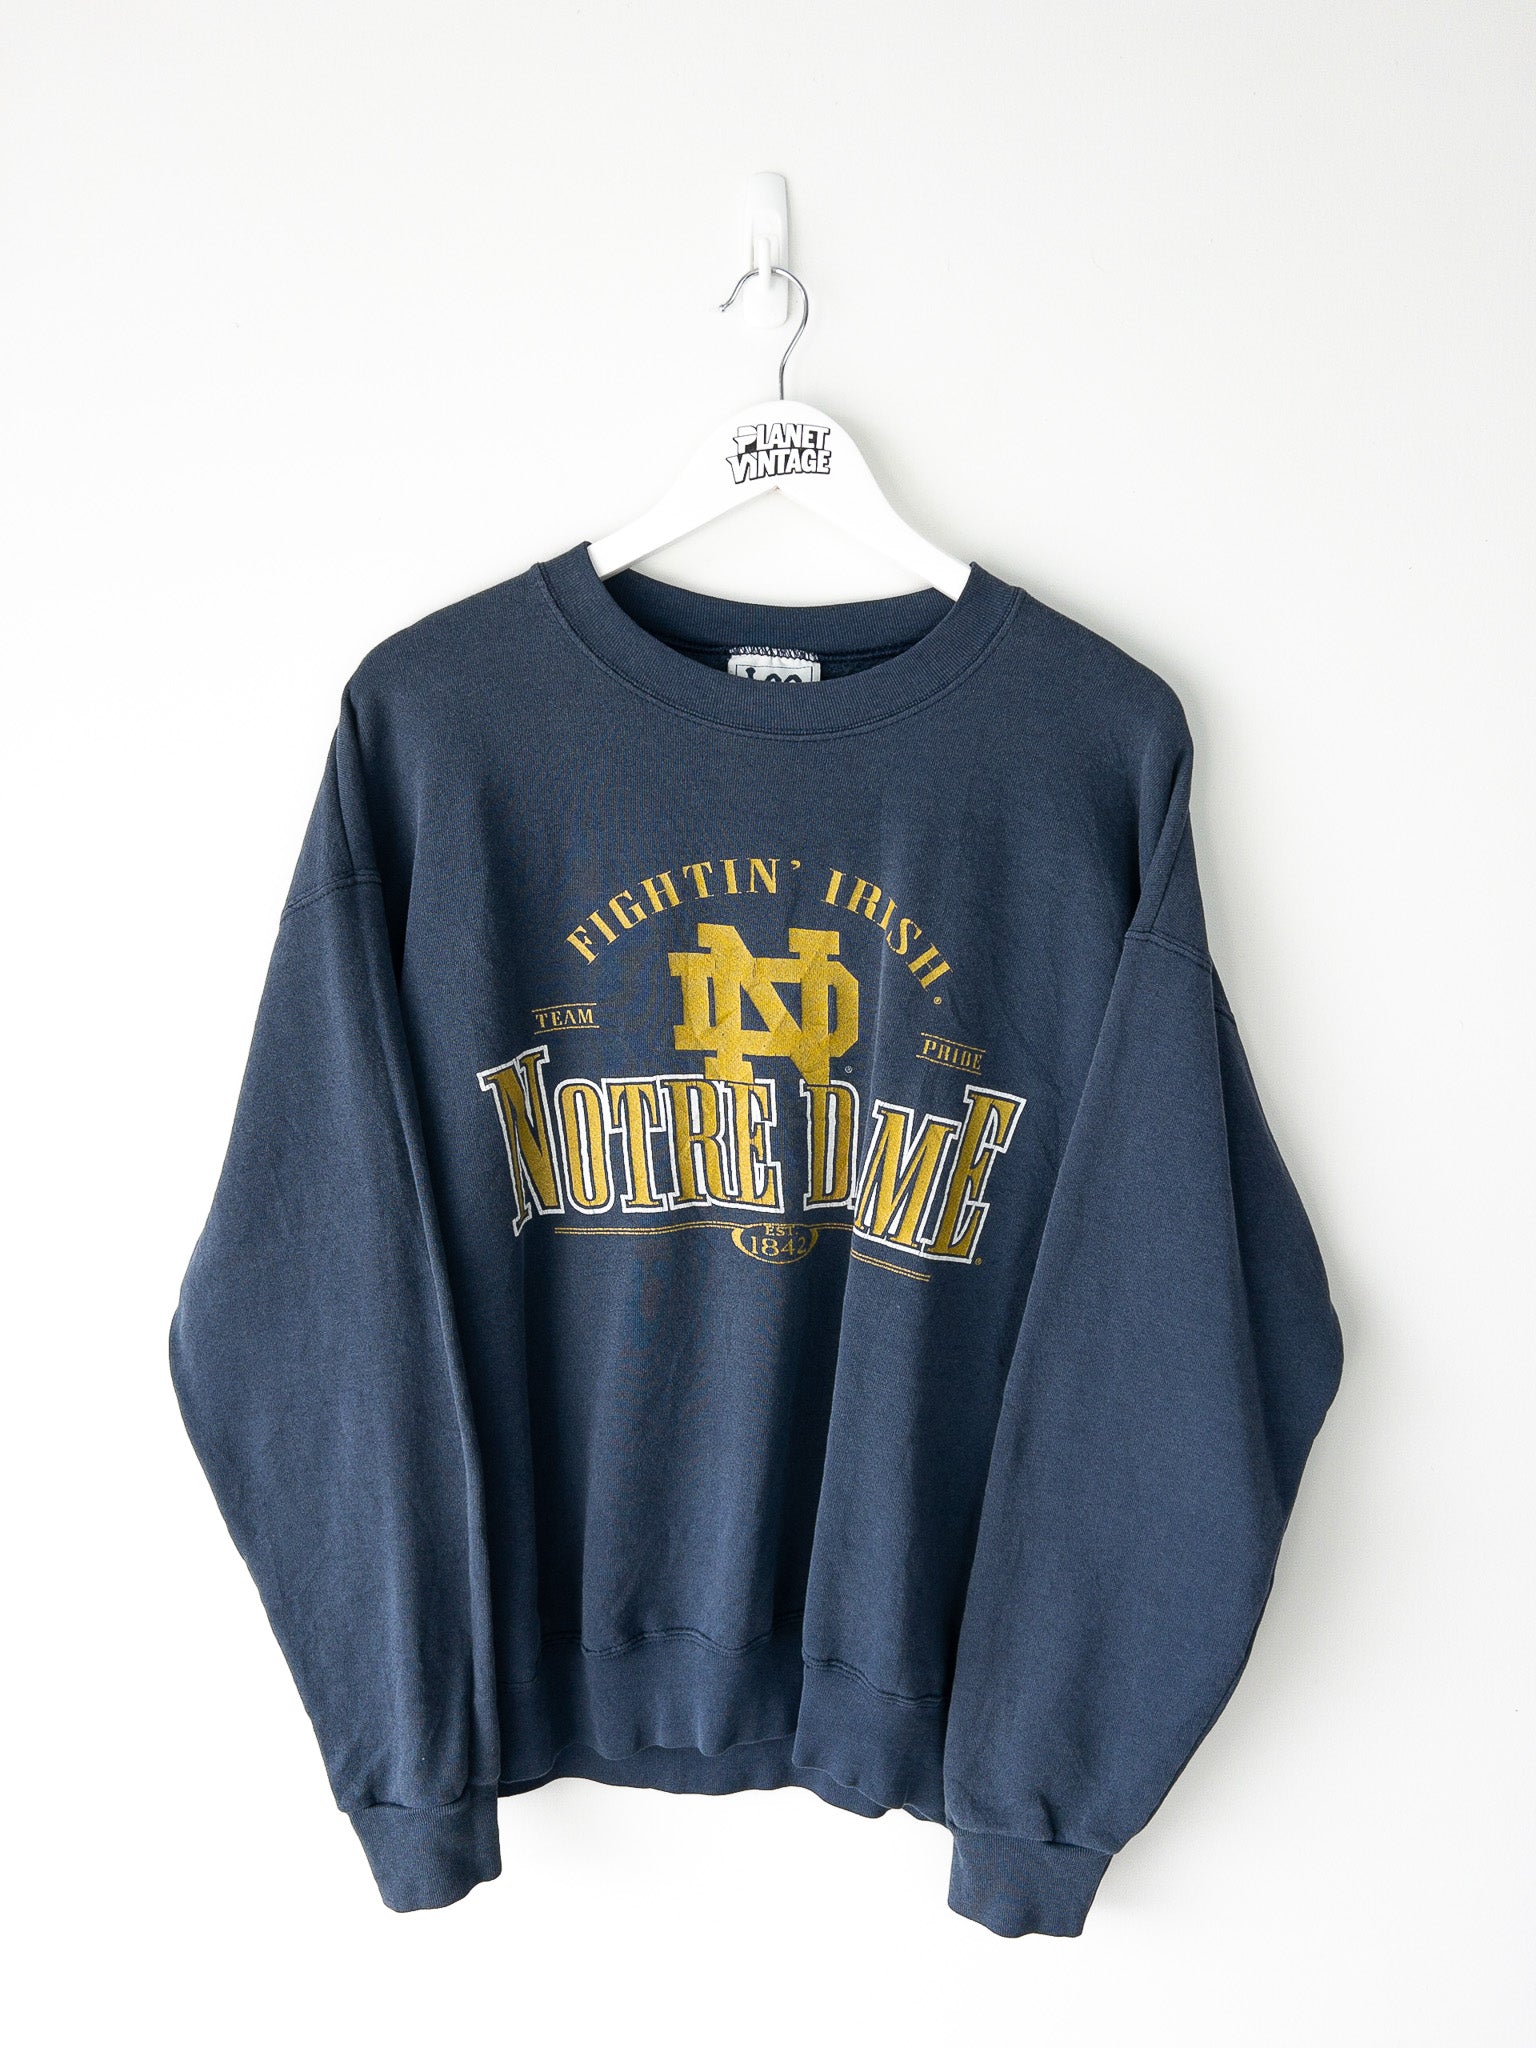 Vintage Notre Dame Fightin' Irish Sweatshirt (L)